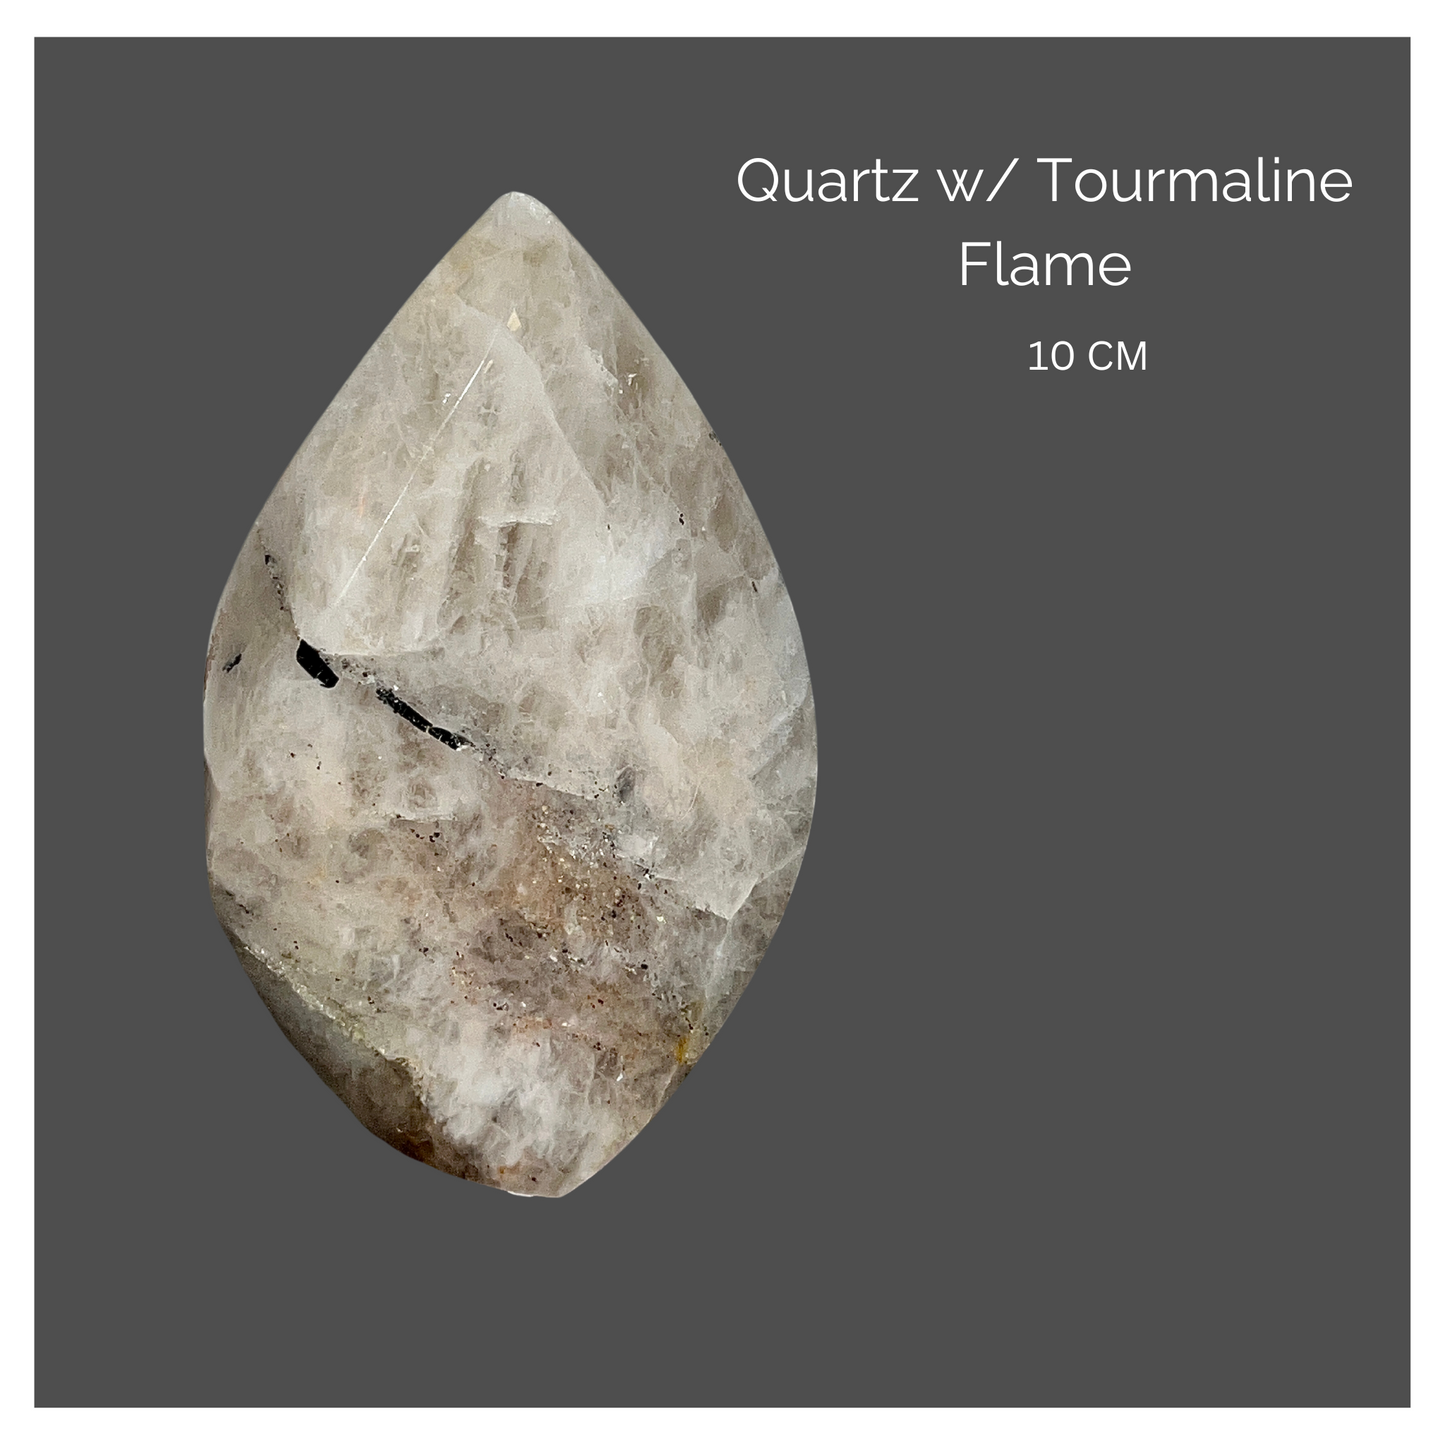 Quartz w/ Tourmaline Flame